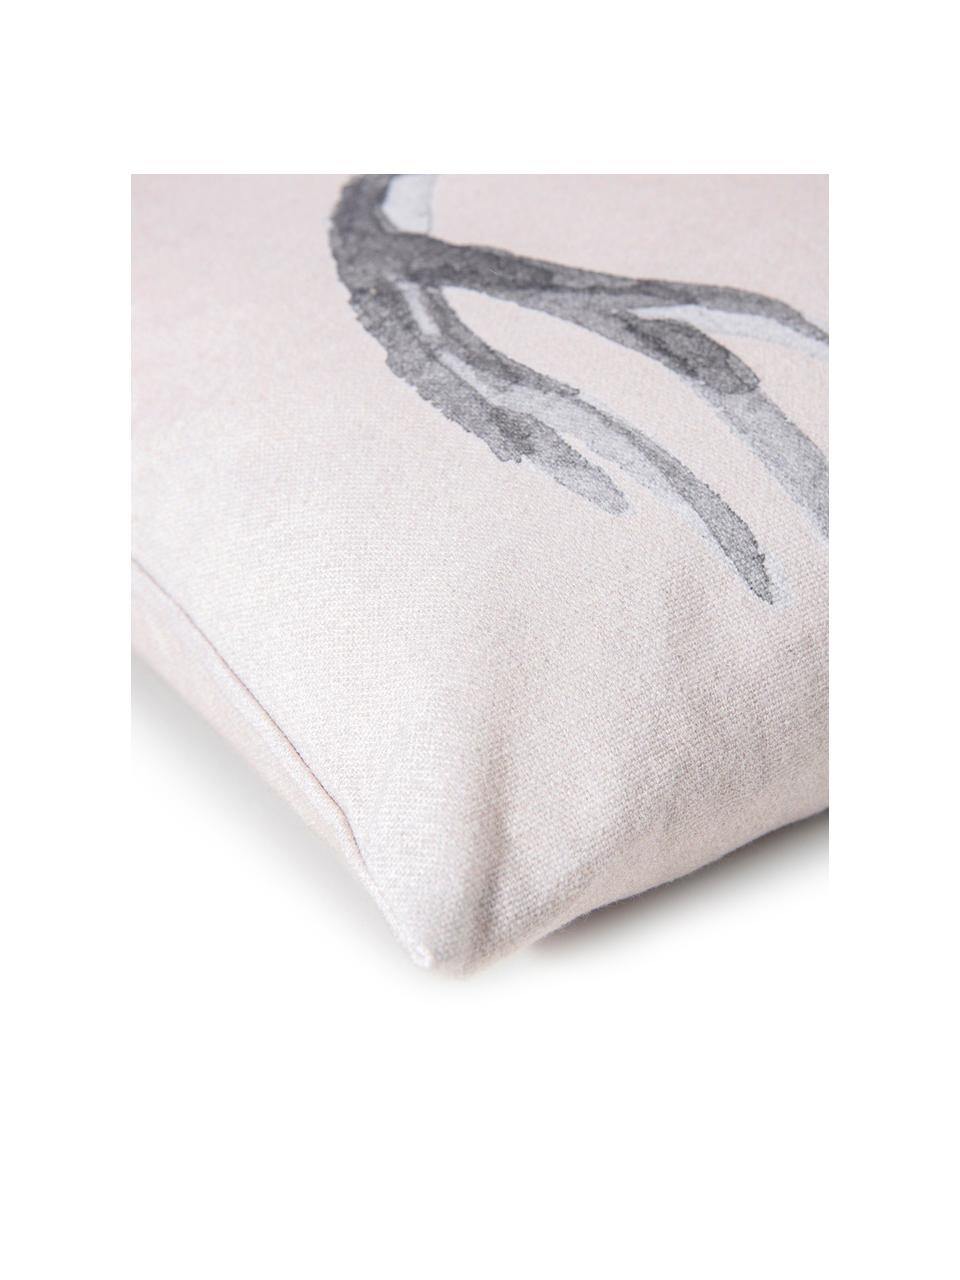 Dwustronna poszewka na poduszkę Ria, 100% bawełna, Blady różowy, odcienie szarego, S 50 x D 50 cm